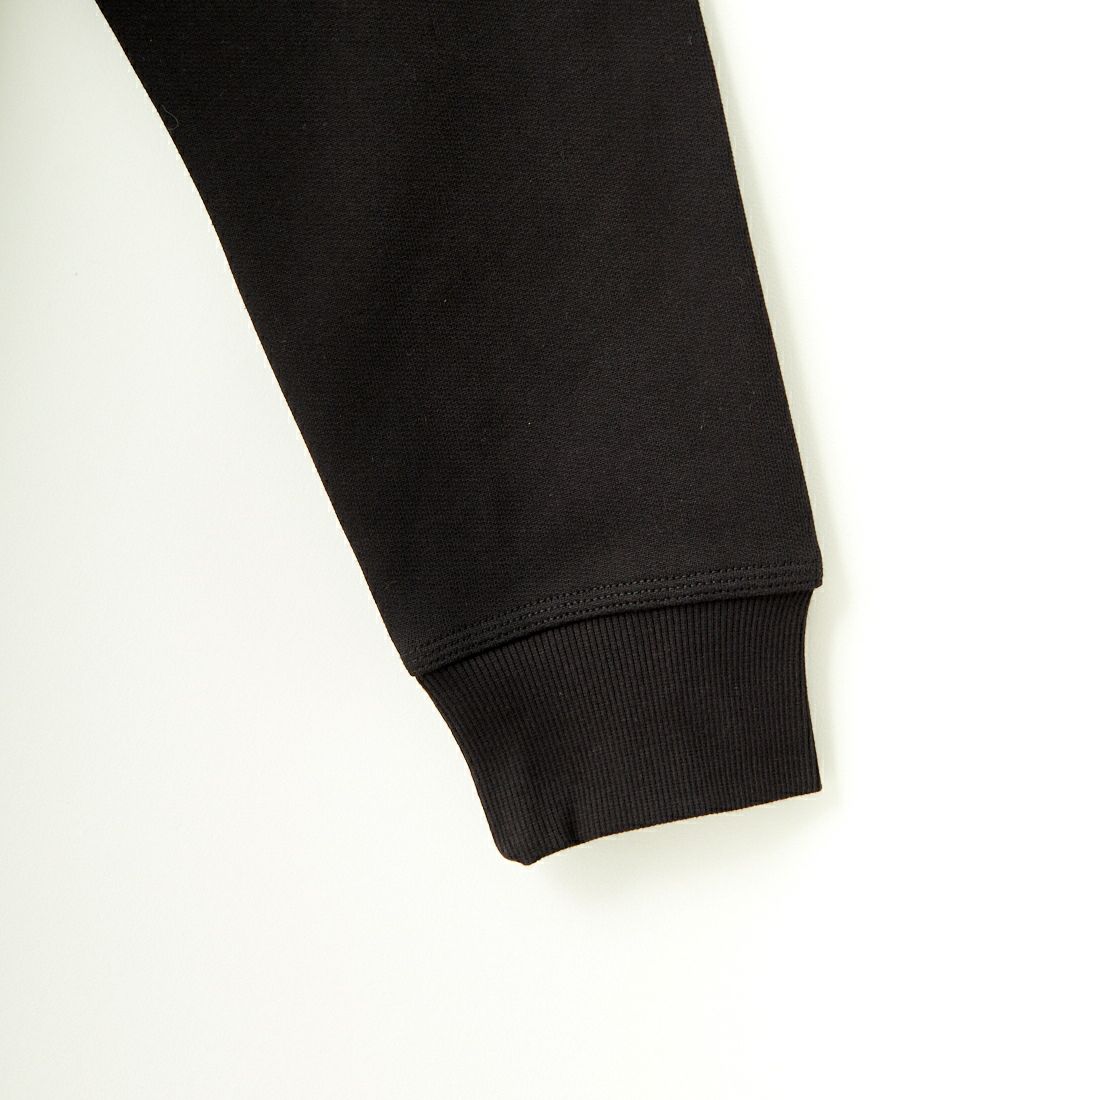 carhartt WIP [カーハートダブリューアイピー] ハーフジップアメリカンスクリプトスウェットシャツ [I027014] BLACK